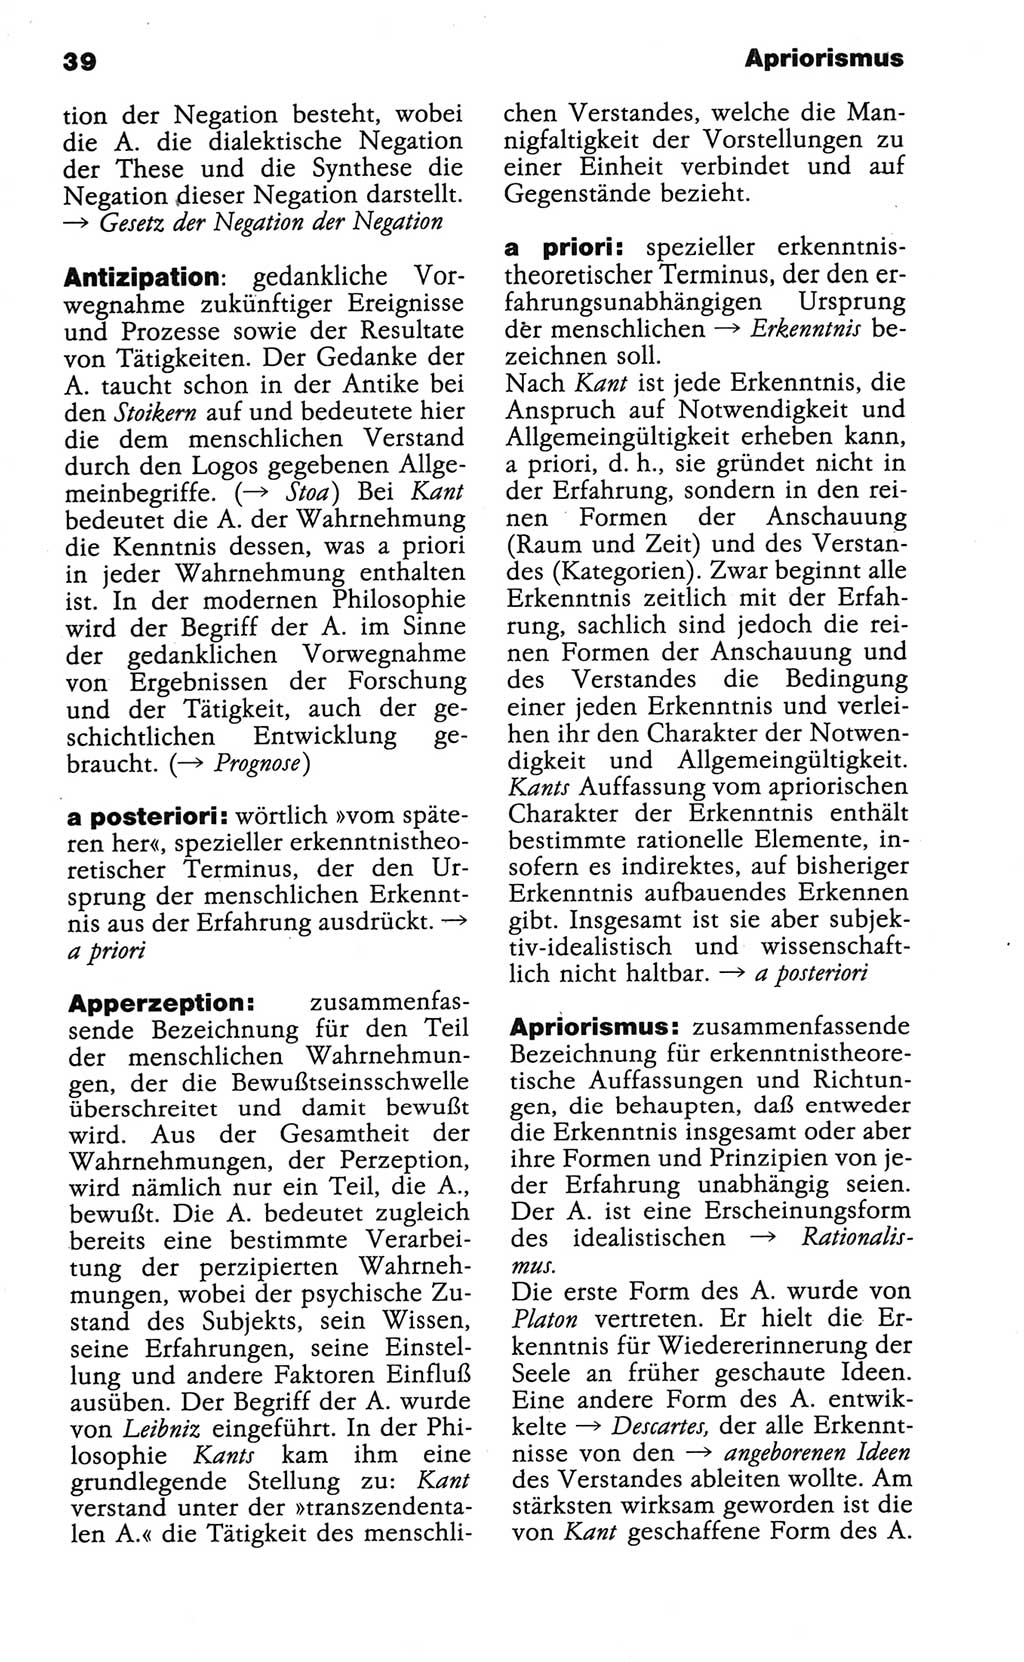 Wörterbuch der marxistisch-leninistischen Philosophie [Deutsche Demokratische Republik (DDR)] 1986, Seite 39 (Wb. ML Phil. DDR 1986, S. 39)